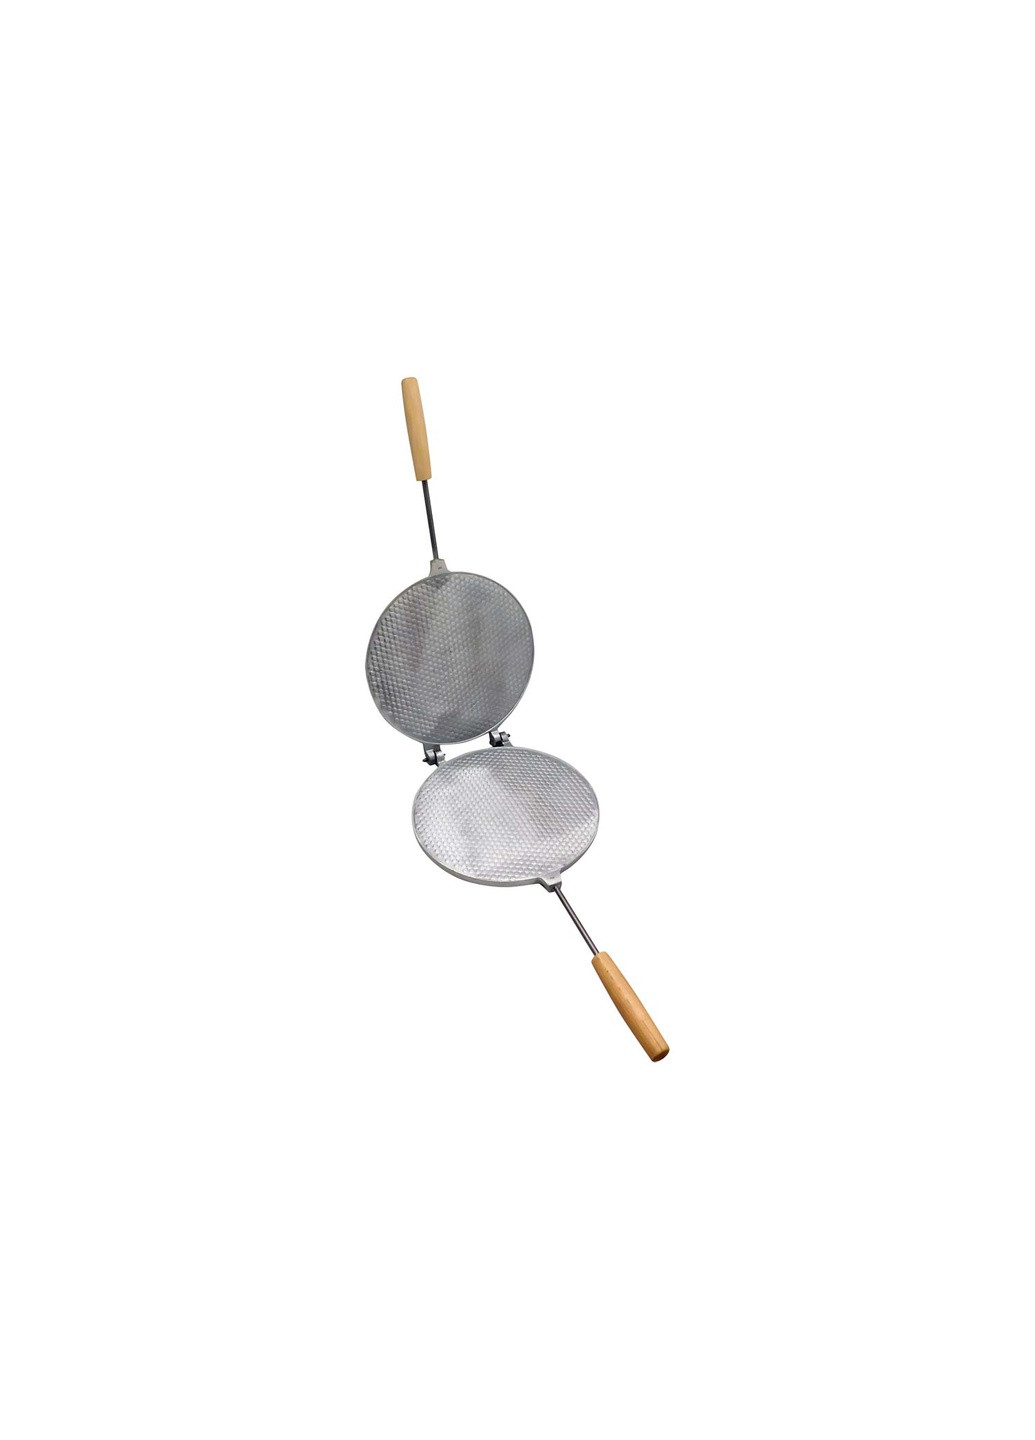 Вафельница форма для выпечки вафельных коржей круглая 210 мм (большая, деревянные ручки, кружки) Ласунка (259294402)